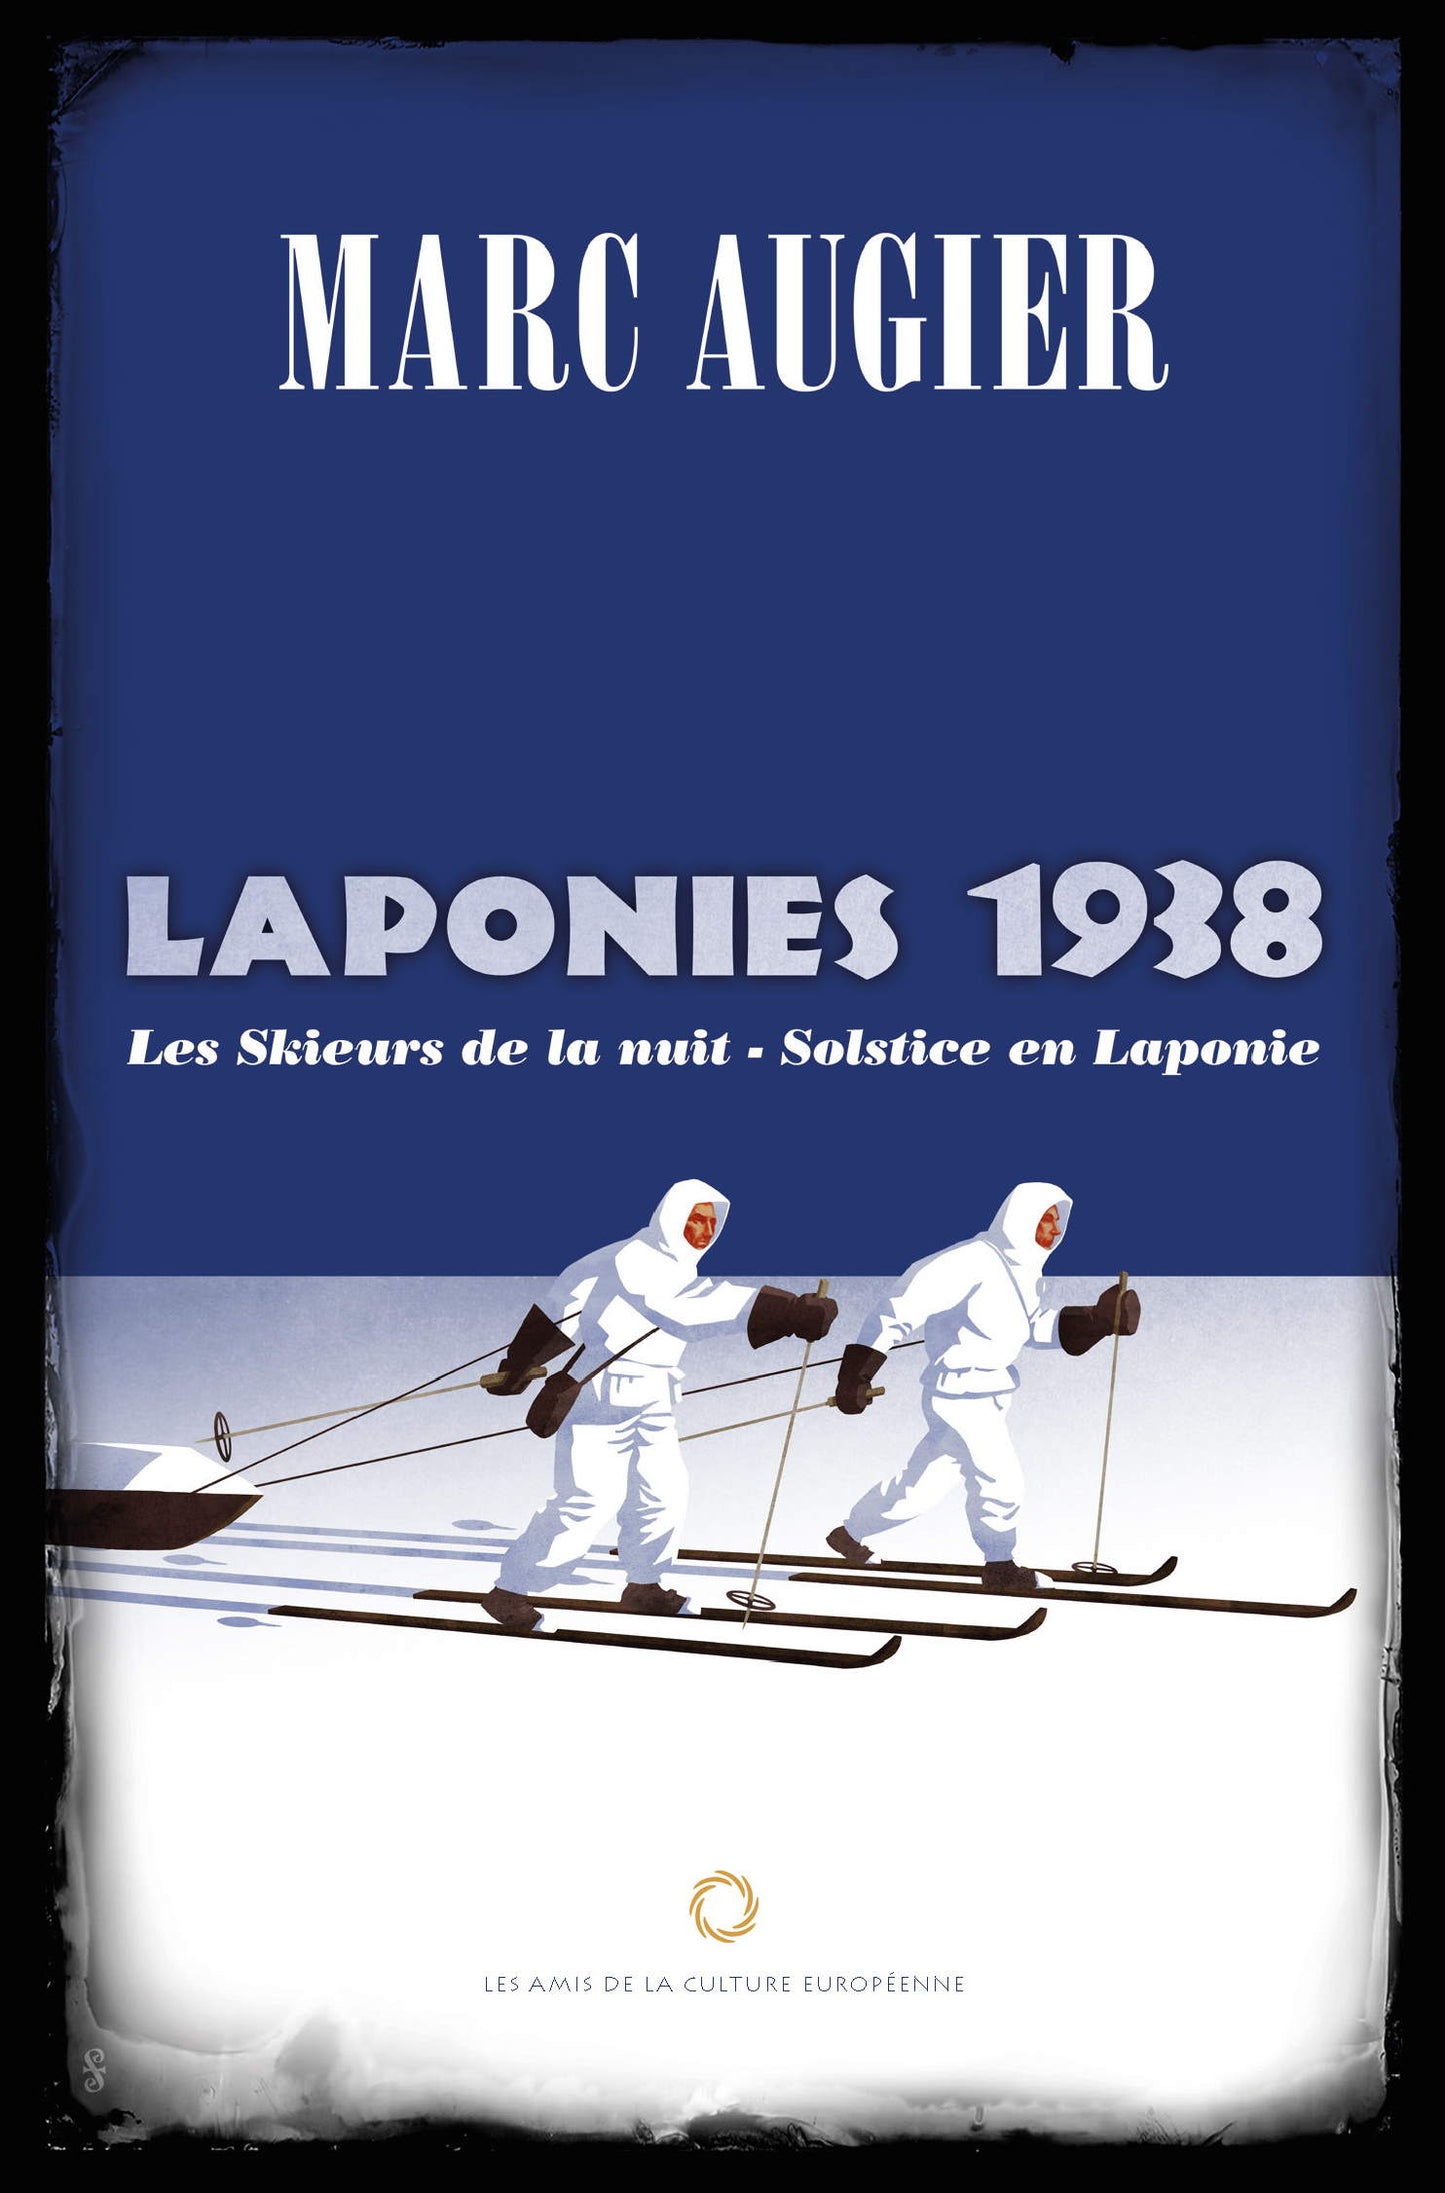 LAPONIES 1938 – Solstice en Laponie / Les skieurs de la nuit - Marc Augier (Saint-Loup)